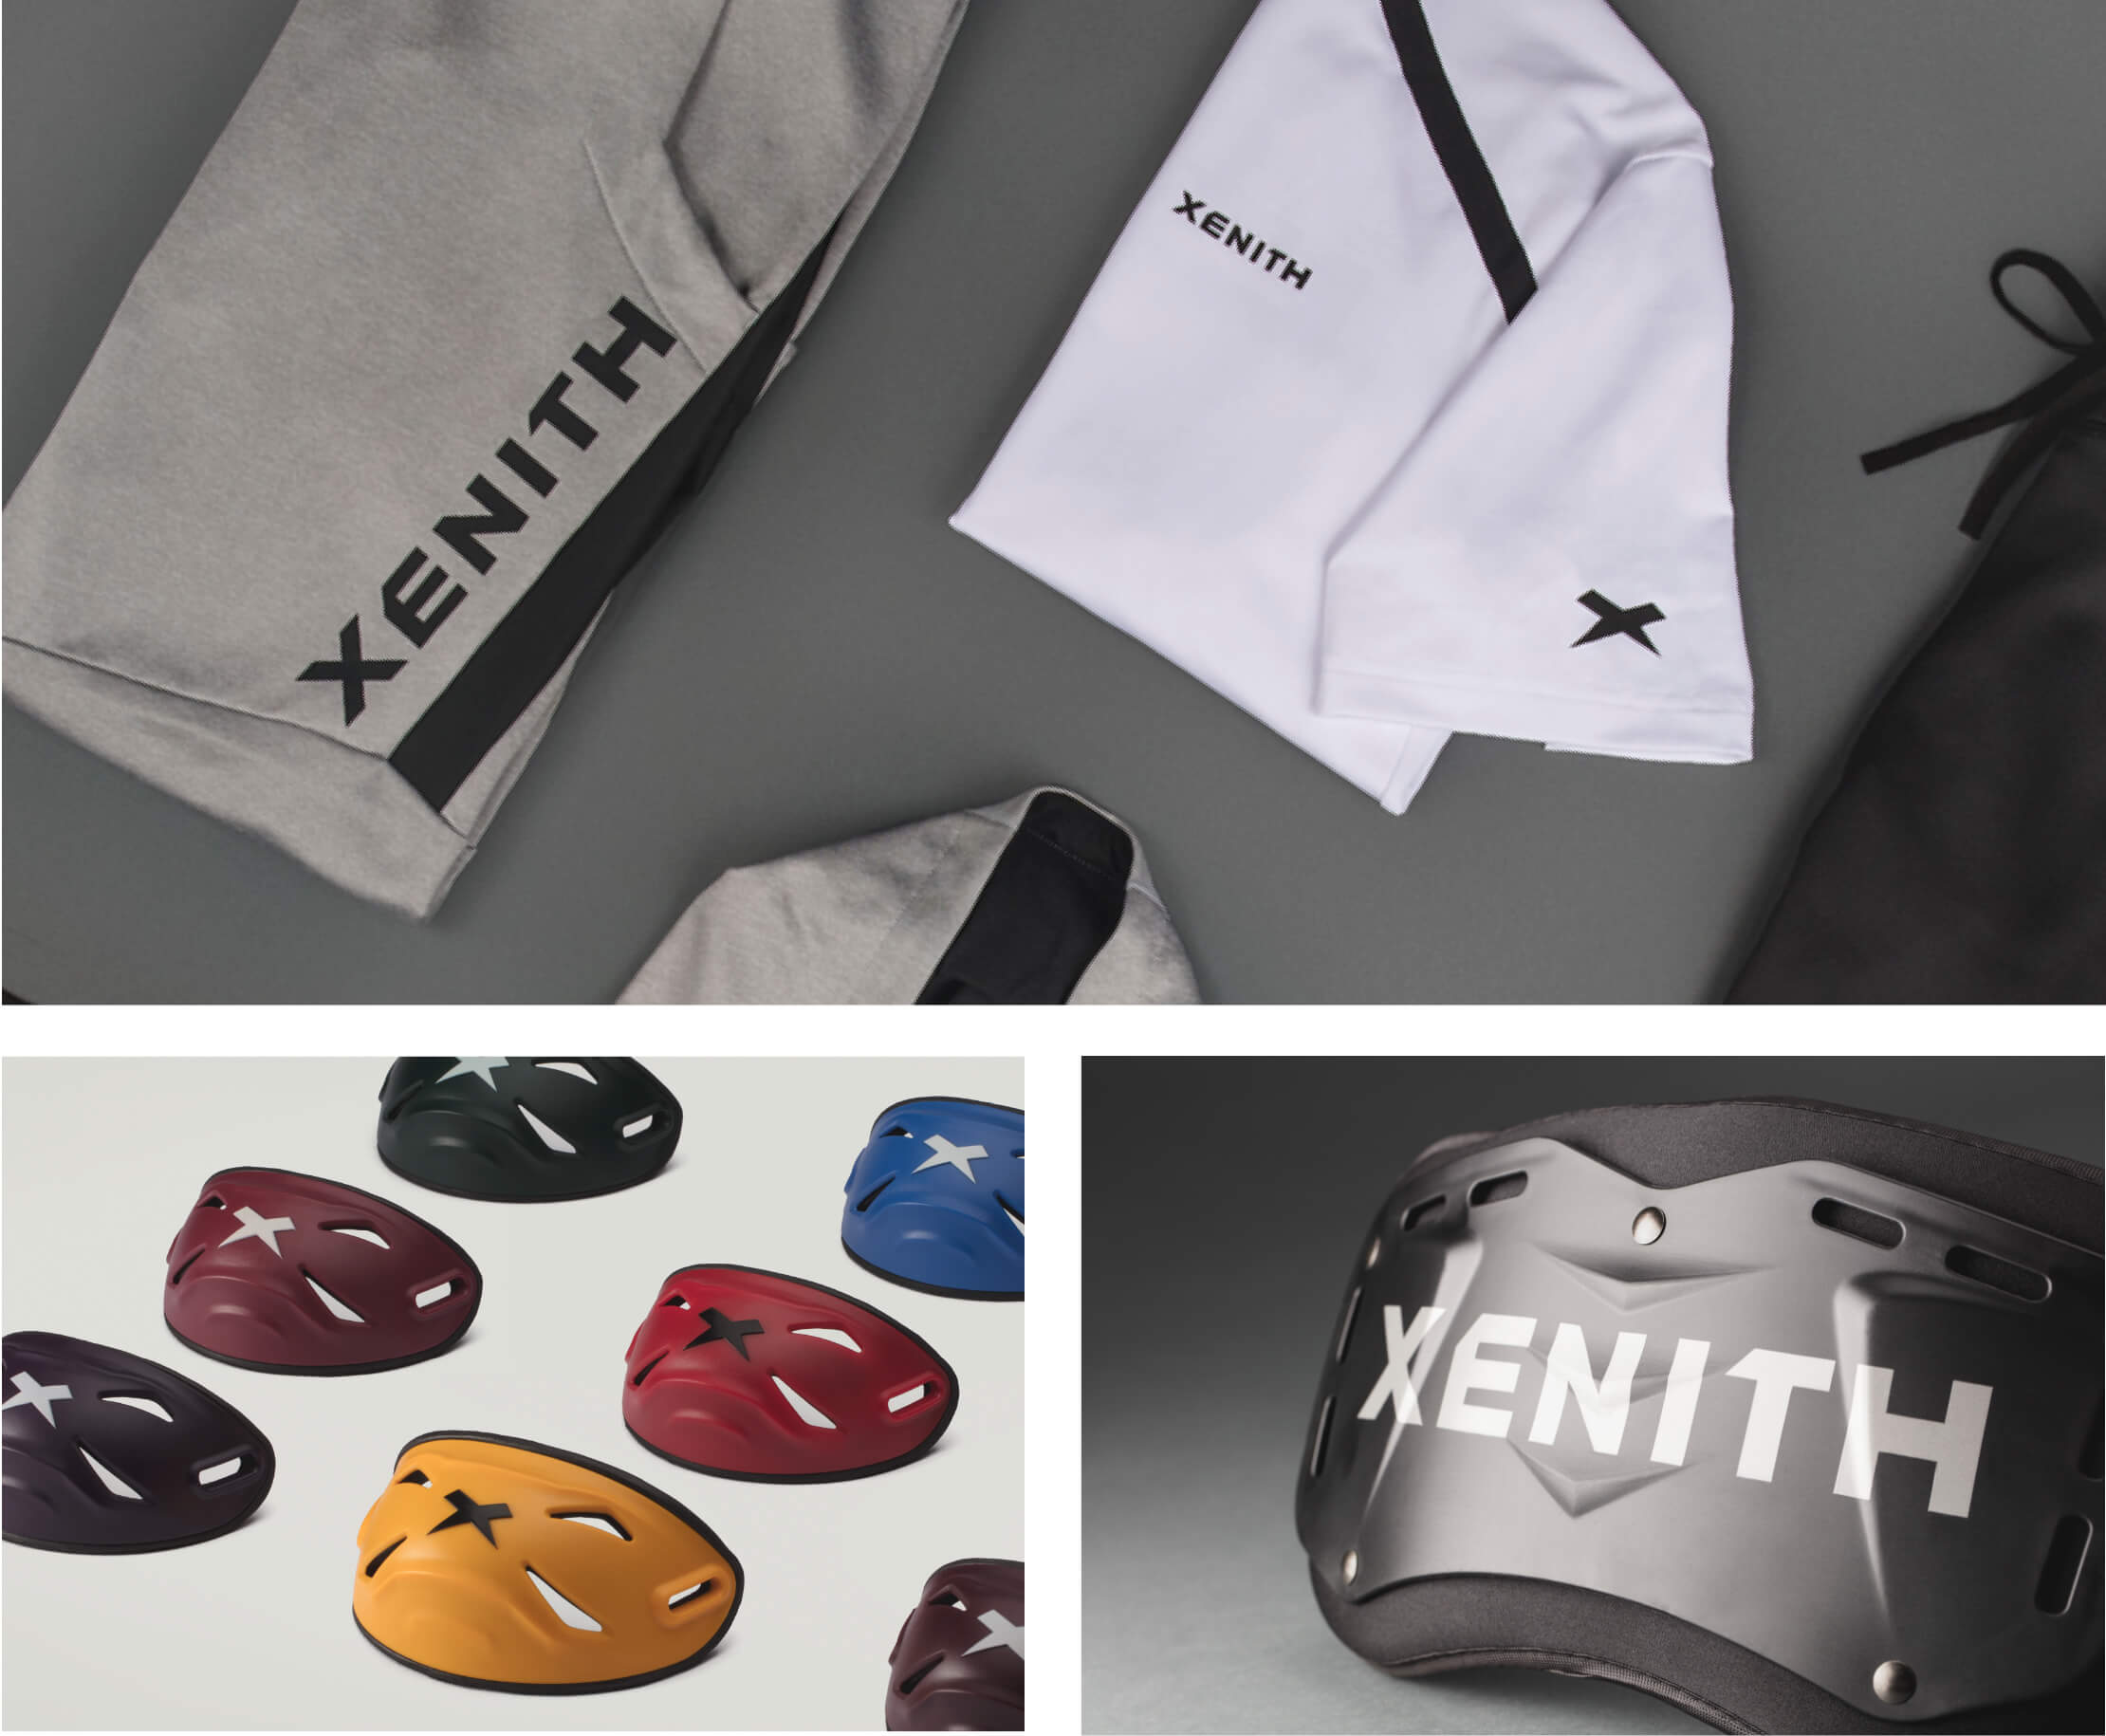 Xenith Logo on Apparel